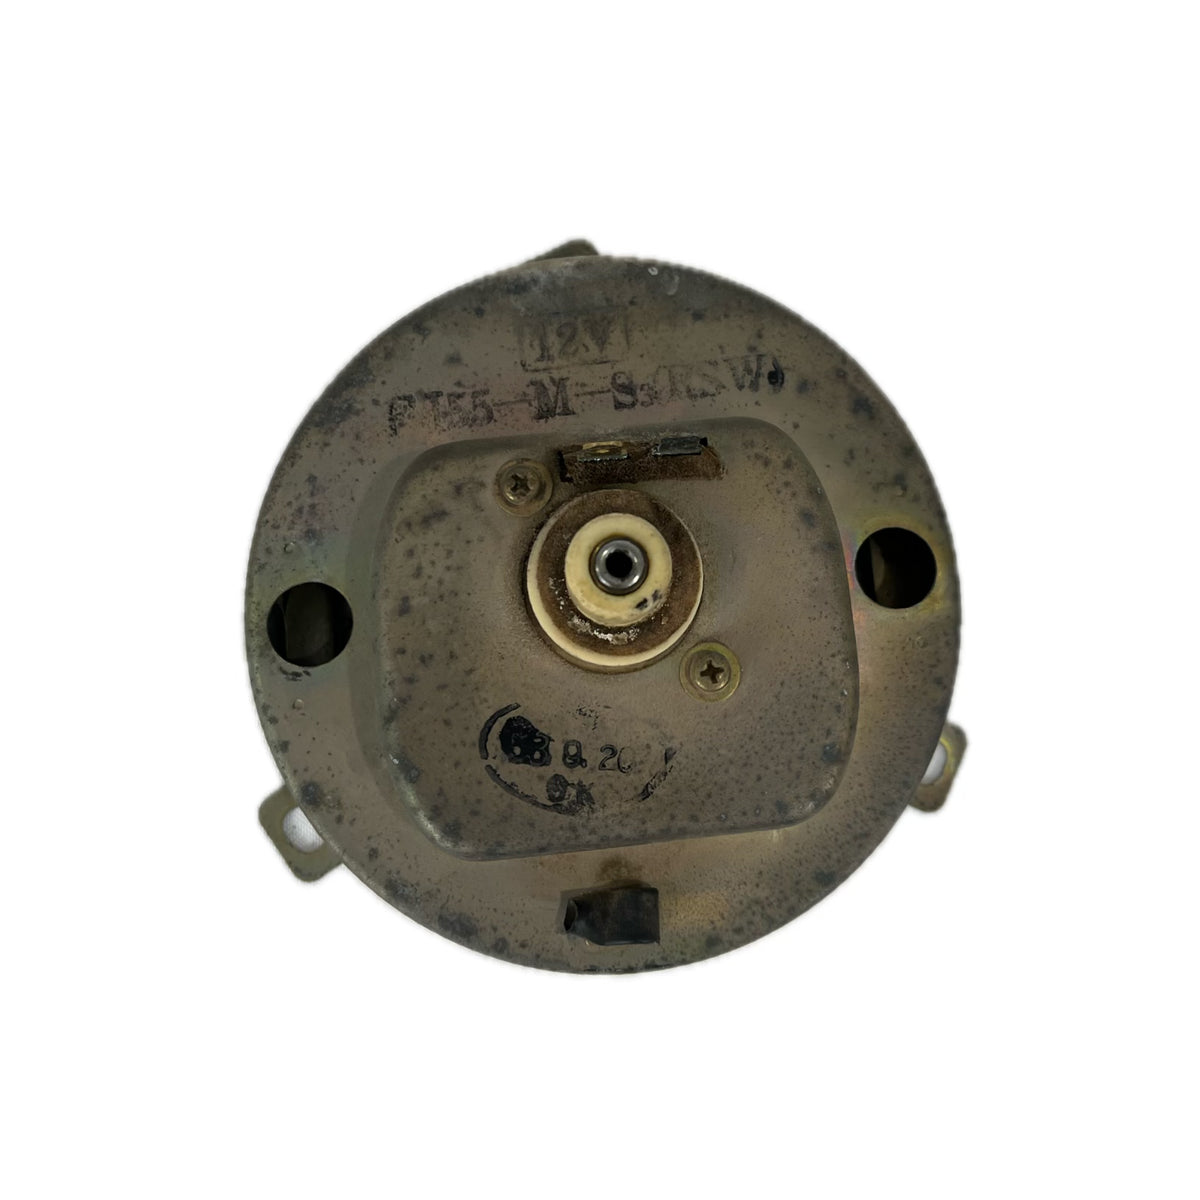 Used - Speedometer Gauge - FJ55 1972-1979